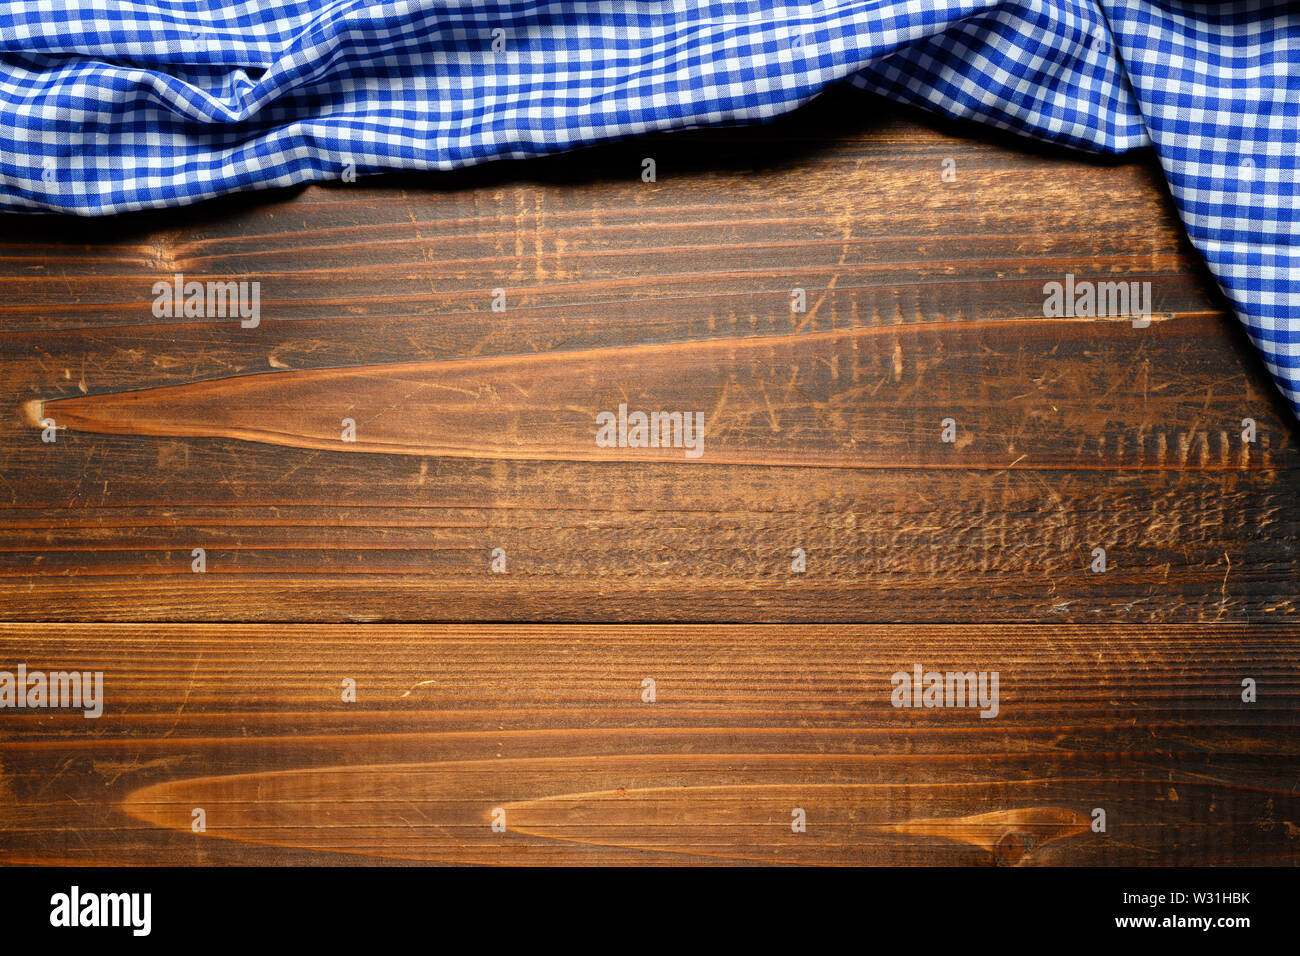 Un controllato gingham tovaglia da picnic sul vecchio tavolo in legno vista superiore Foto Stock